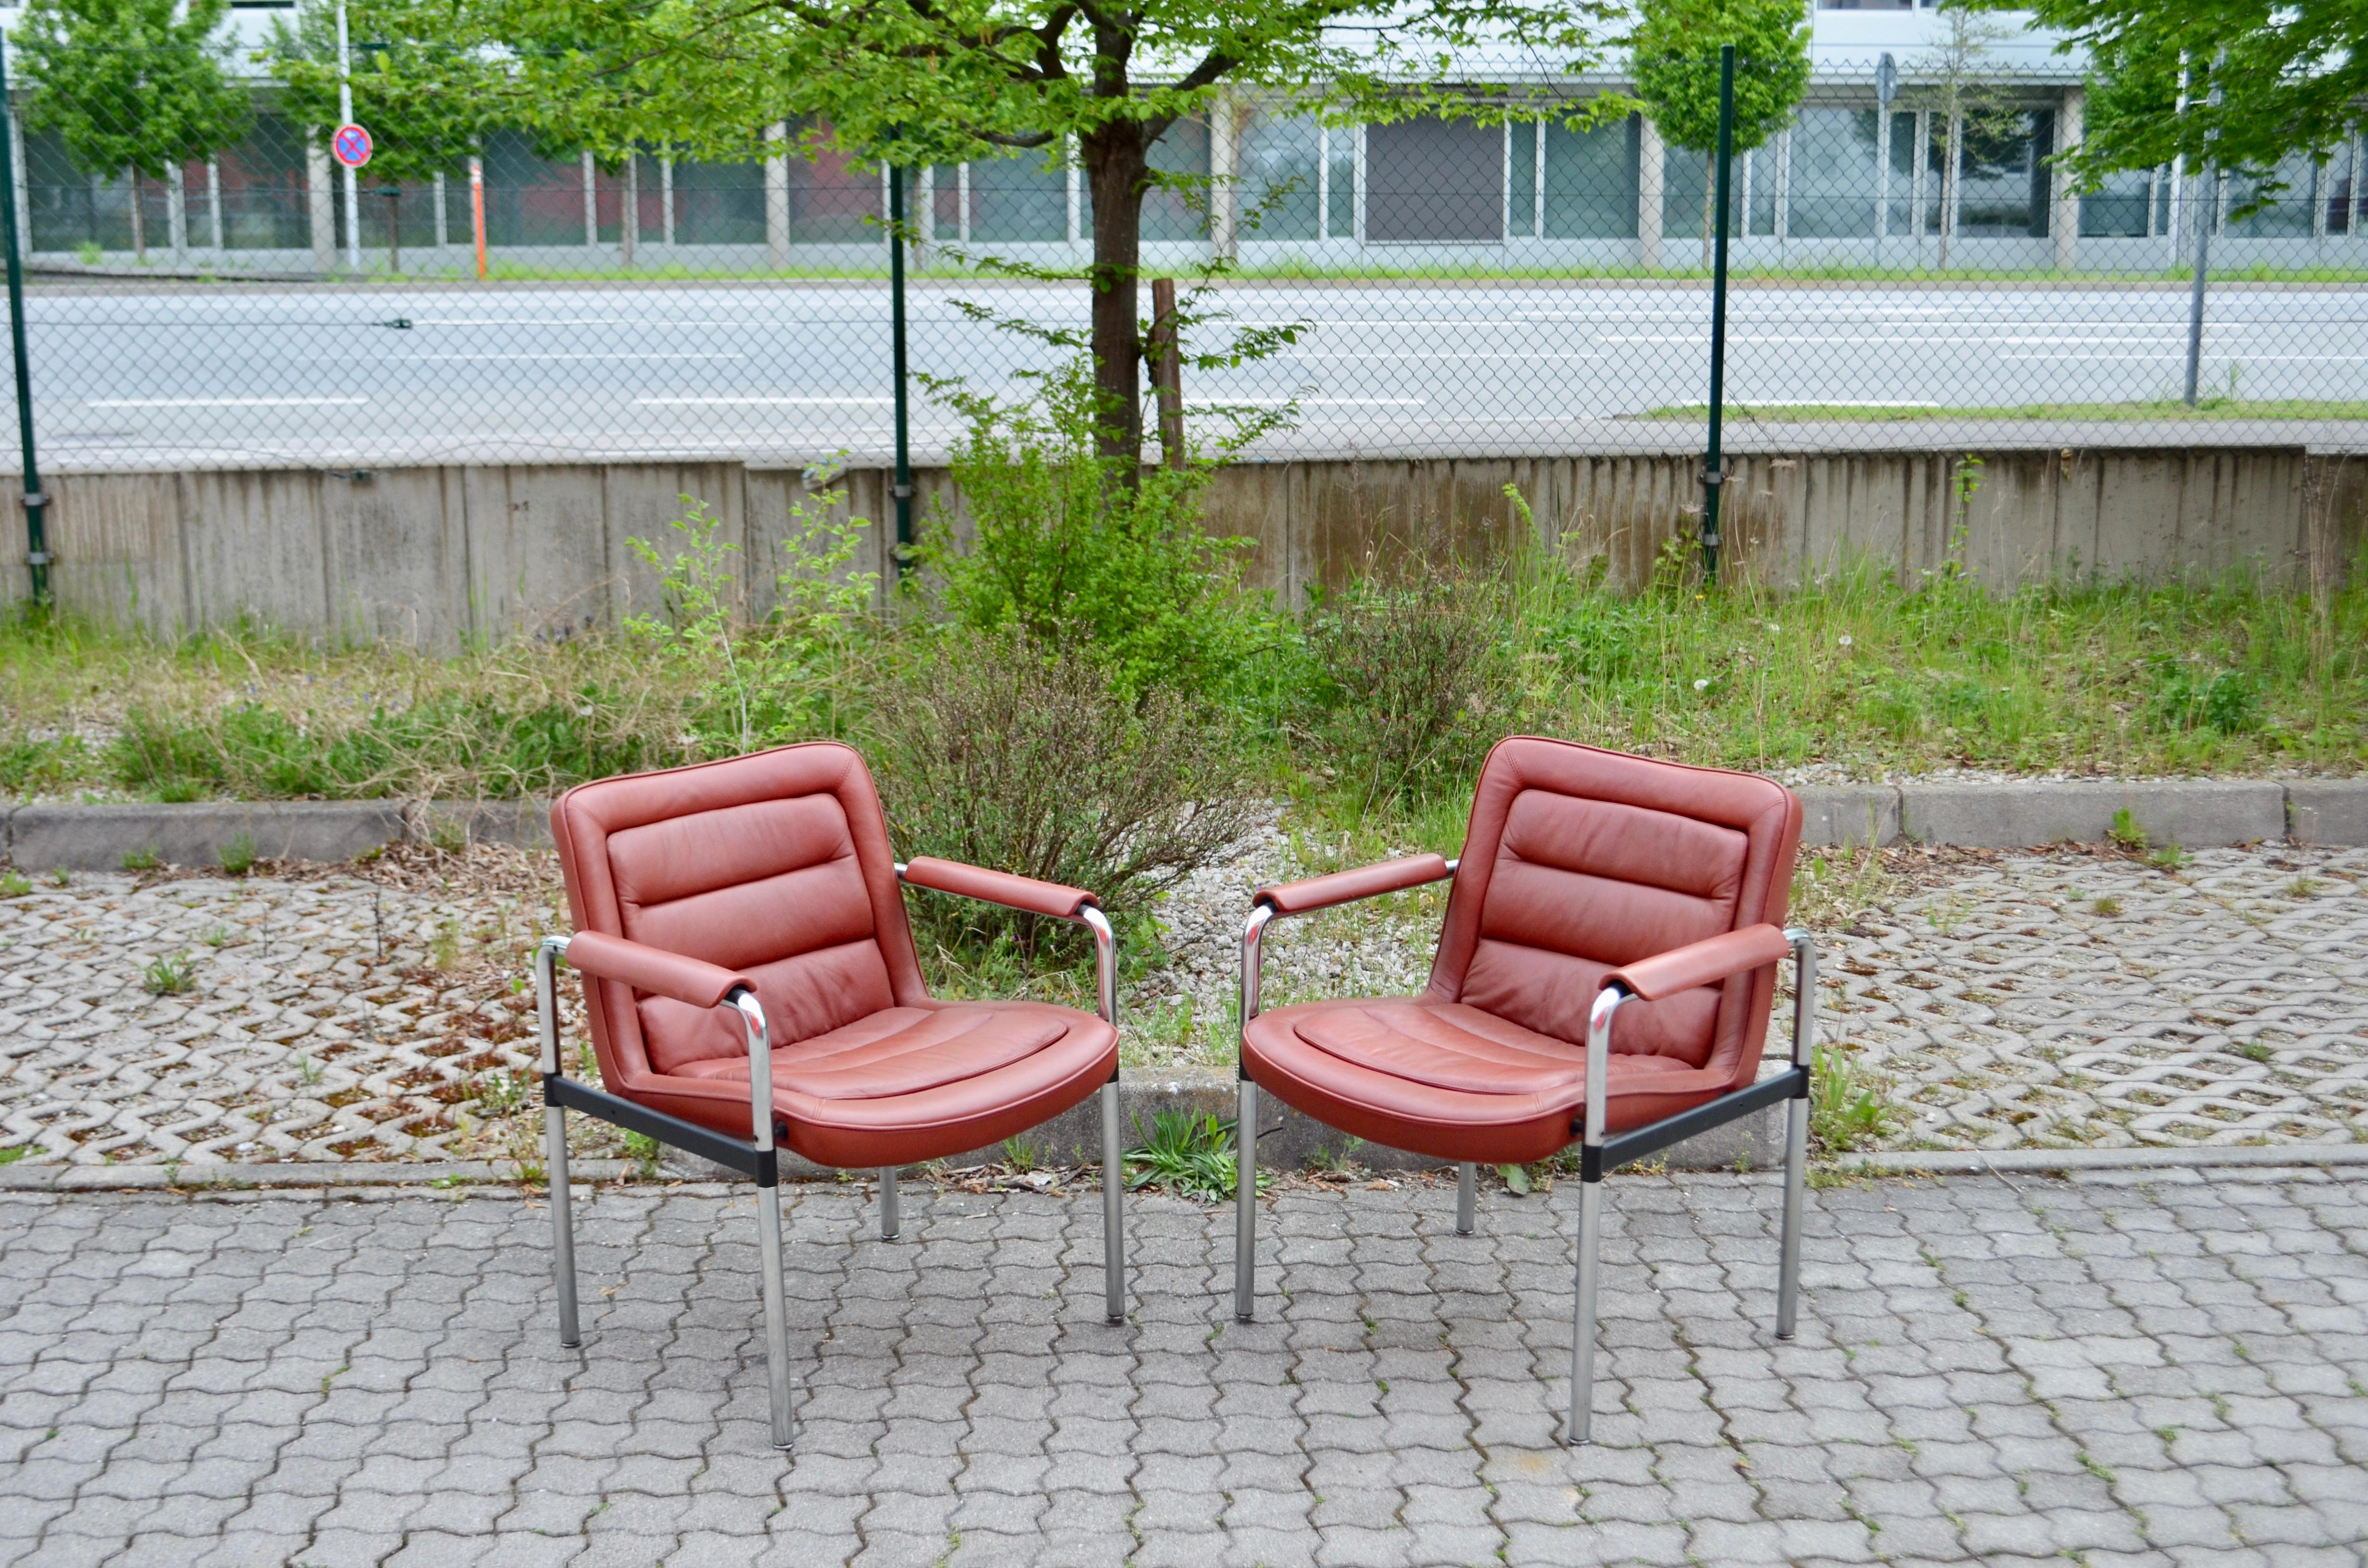 Ce fauteuil de la série 8400 a été conçu par Jorgen Kastholm pour Kusch + Co 
Les pièces comprennent des bases en acier tubulaire chromé mat et un revêtement en cuir rouge avec des accoudoirs.
Les accoudoirs sont bien patinés
Grand confort